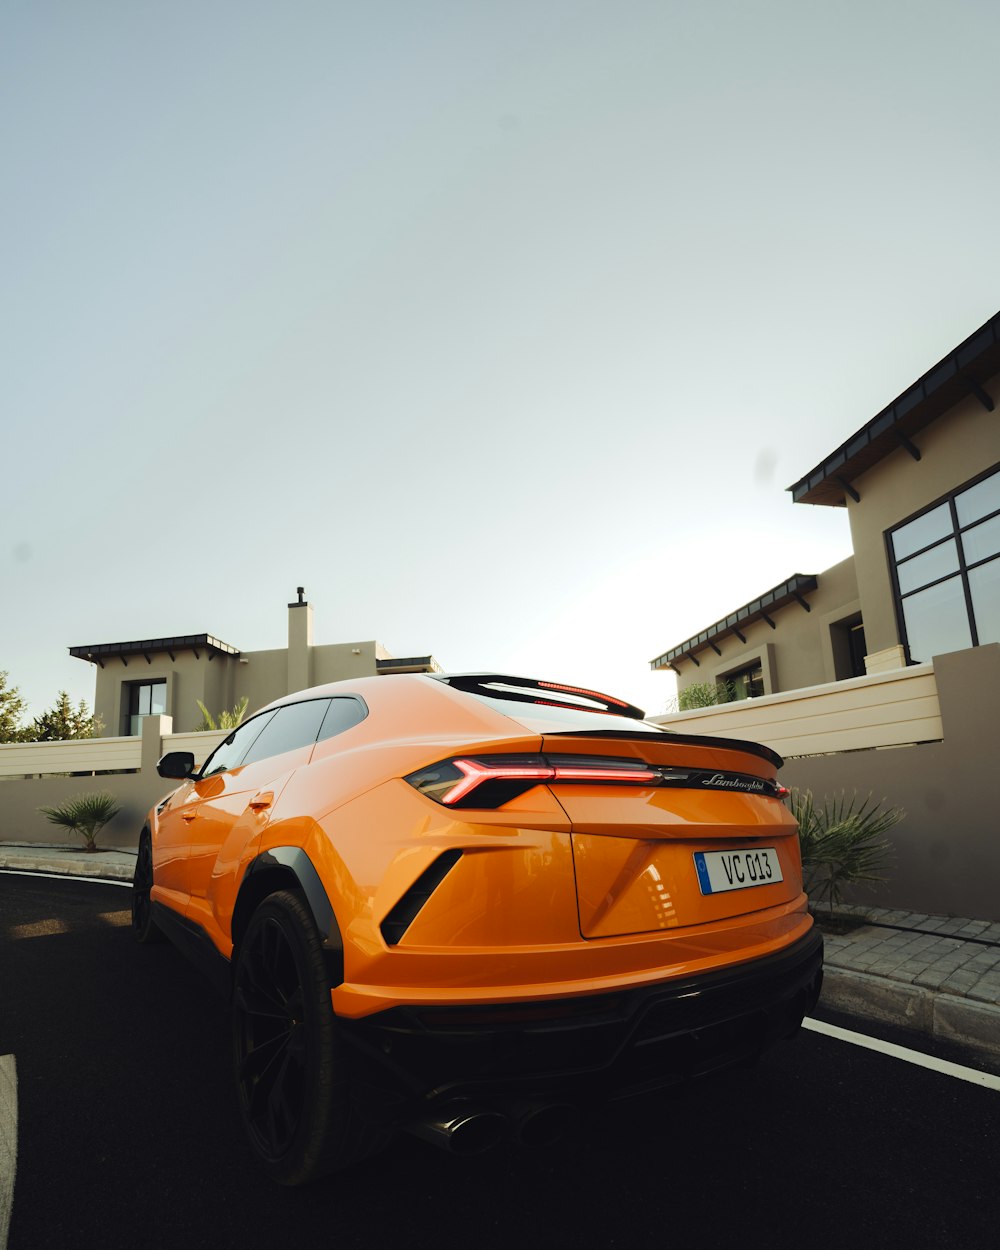 an orange sports car driving down a street